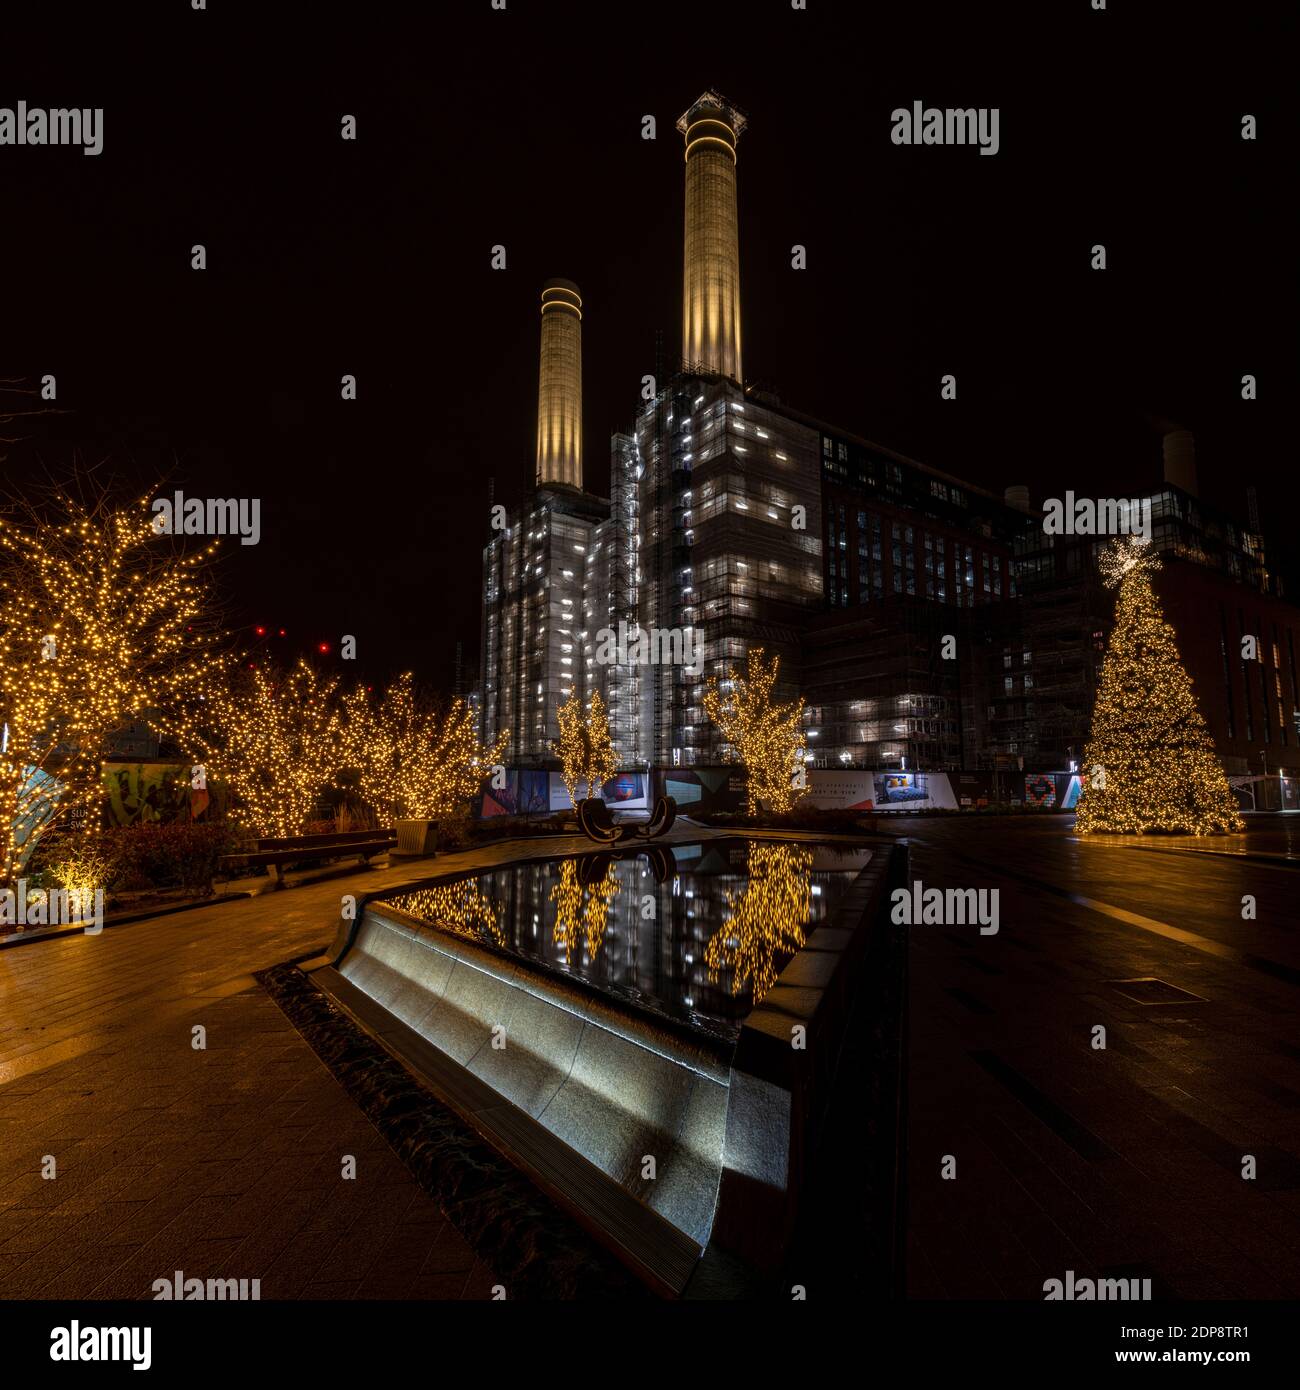 Das ikonische Battersea Kraftwerk und die erhabene Weihnachtsdekoration im Jahr 2020, dem Jahr, in dem COVID Weihnachten dämpfte. Stockfoto